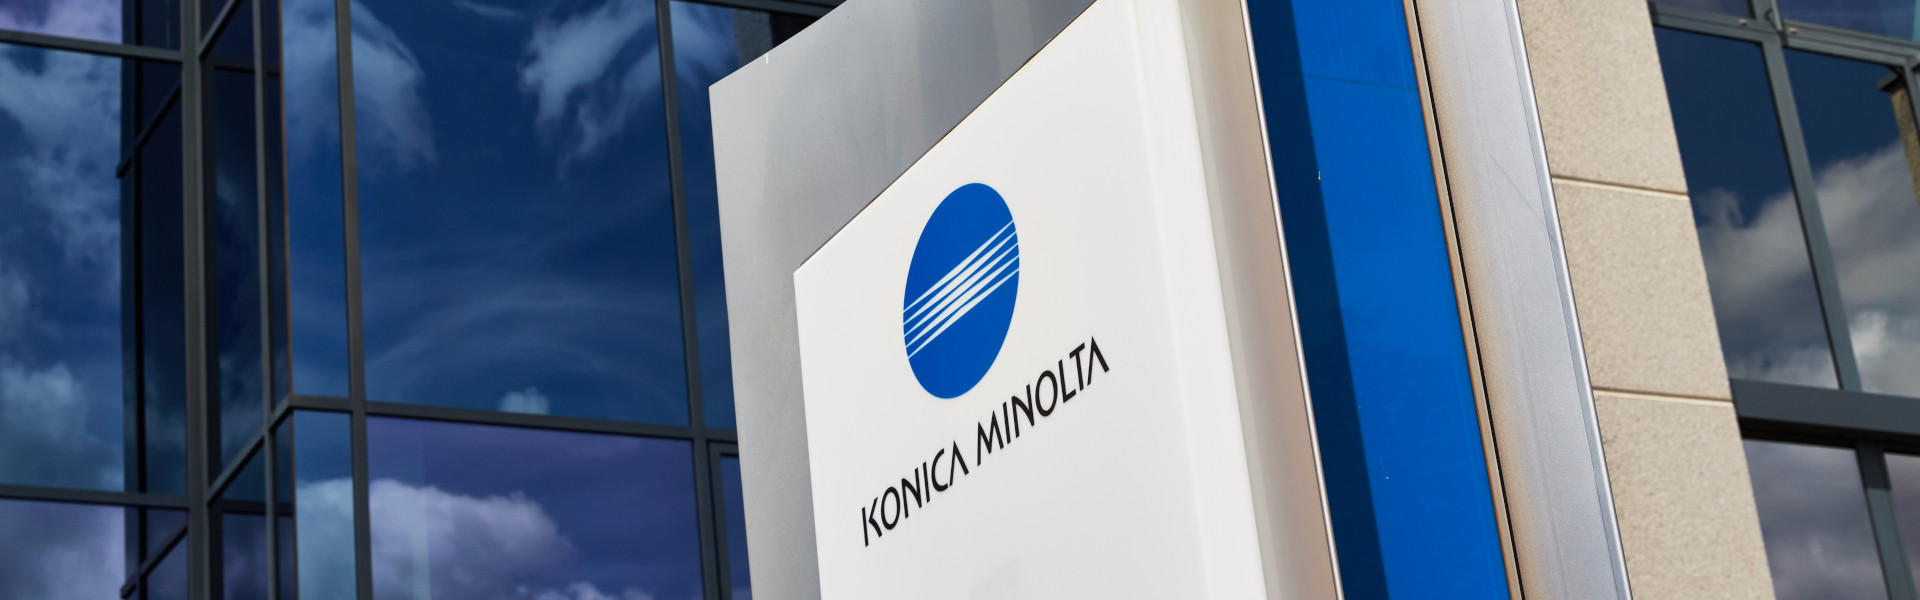 Copy Ekspert certyfikowanym Premium Partnerem Konica Minolta